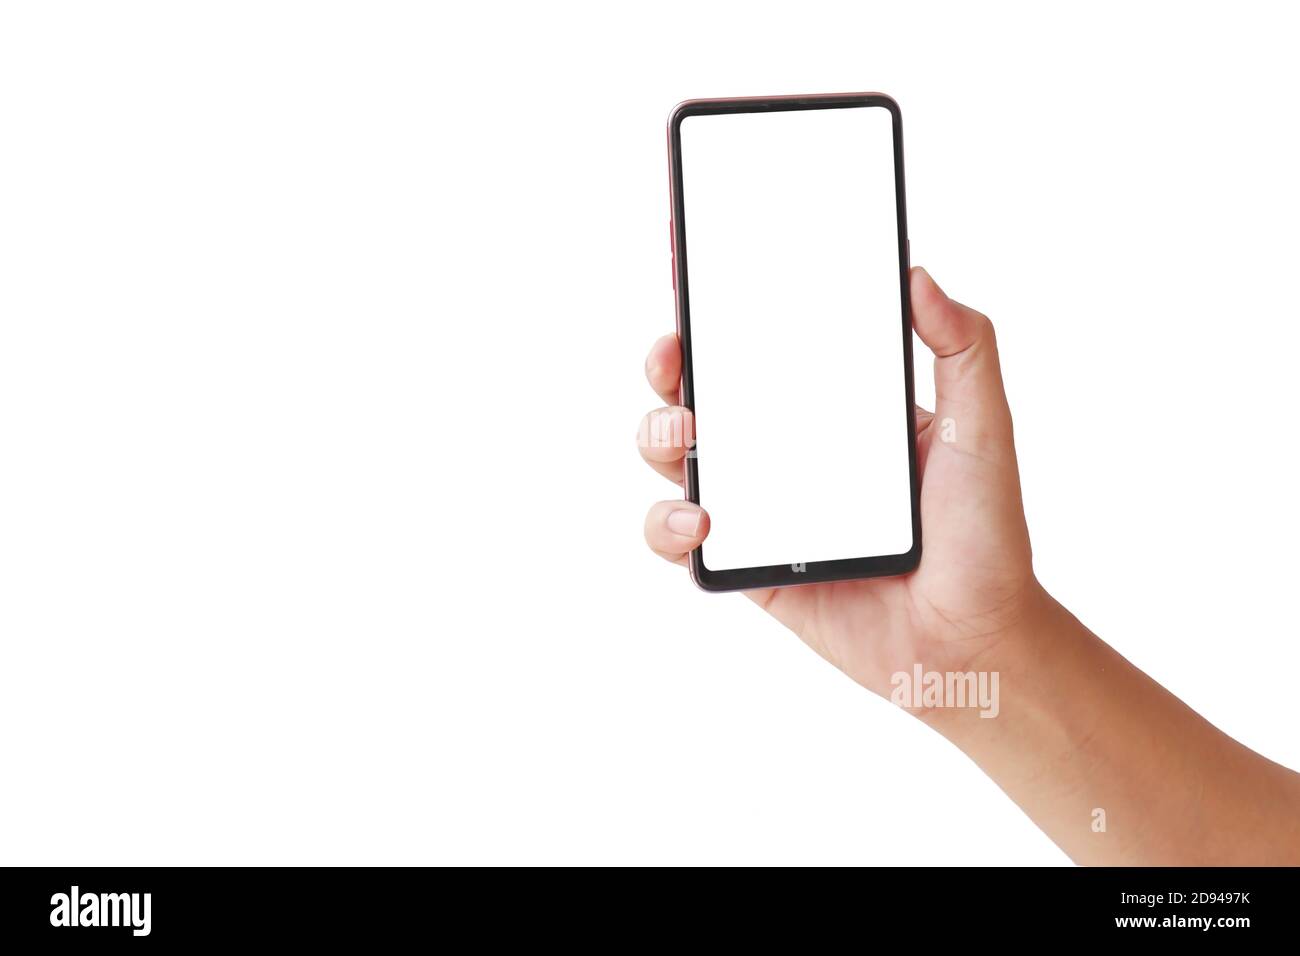 La main tient l'écran blanc, le téléphone portable est isolé sur un fond blanc avec le chemin de coupure. Banque D'Images